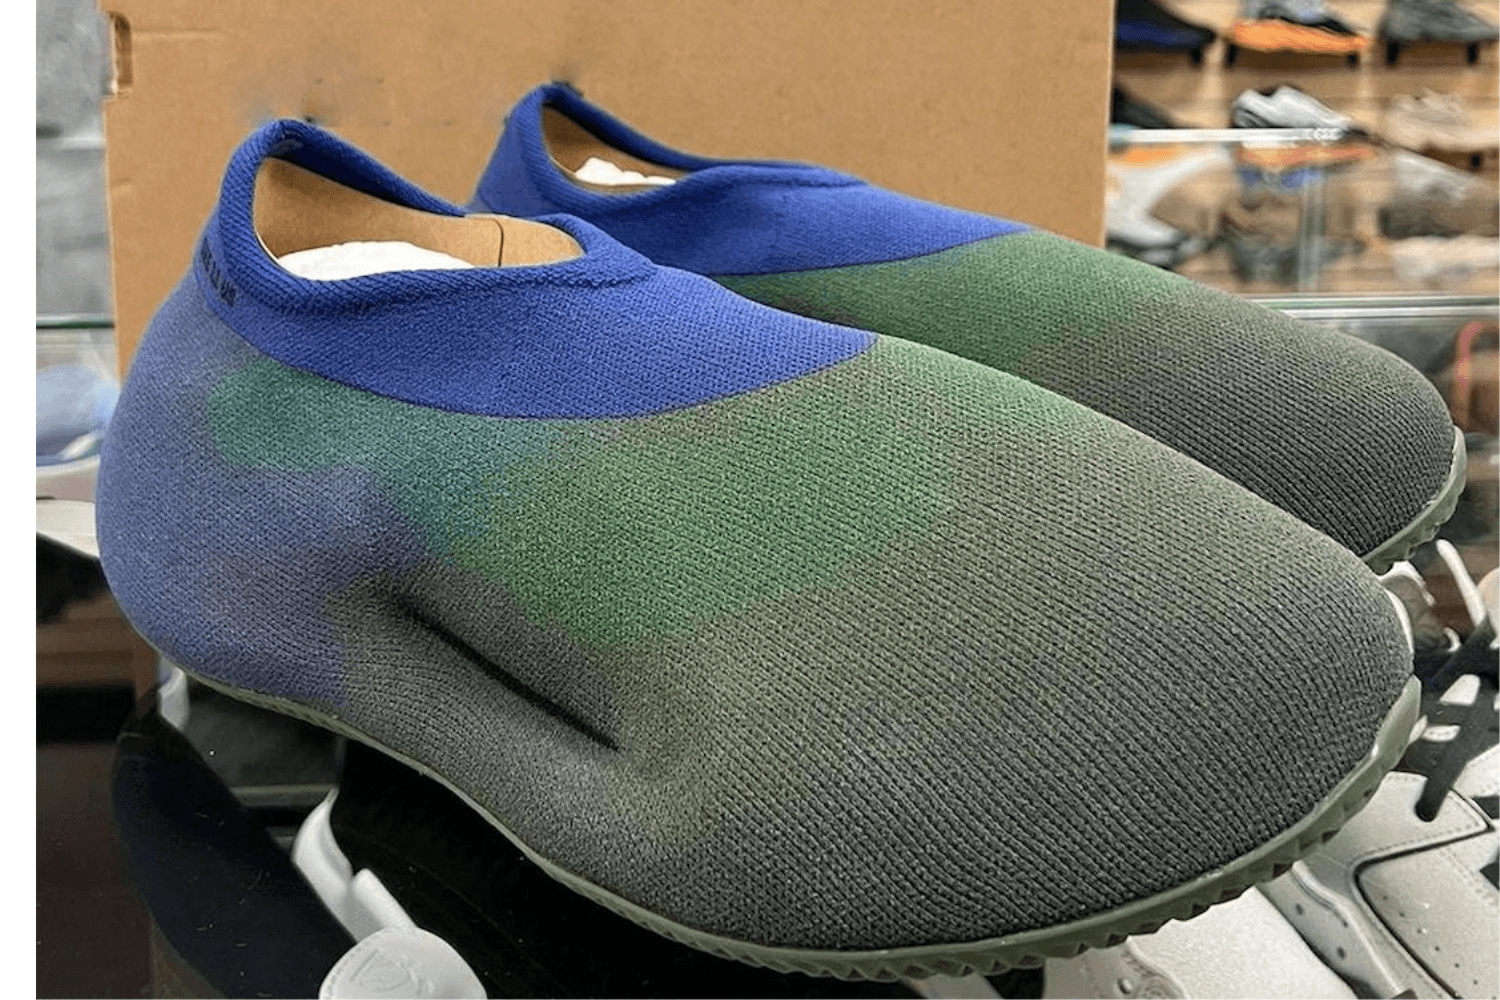 Eerste beelden adidas Yeezy Knit Runner ‘Faded Azure’